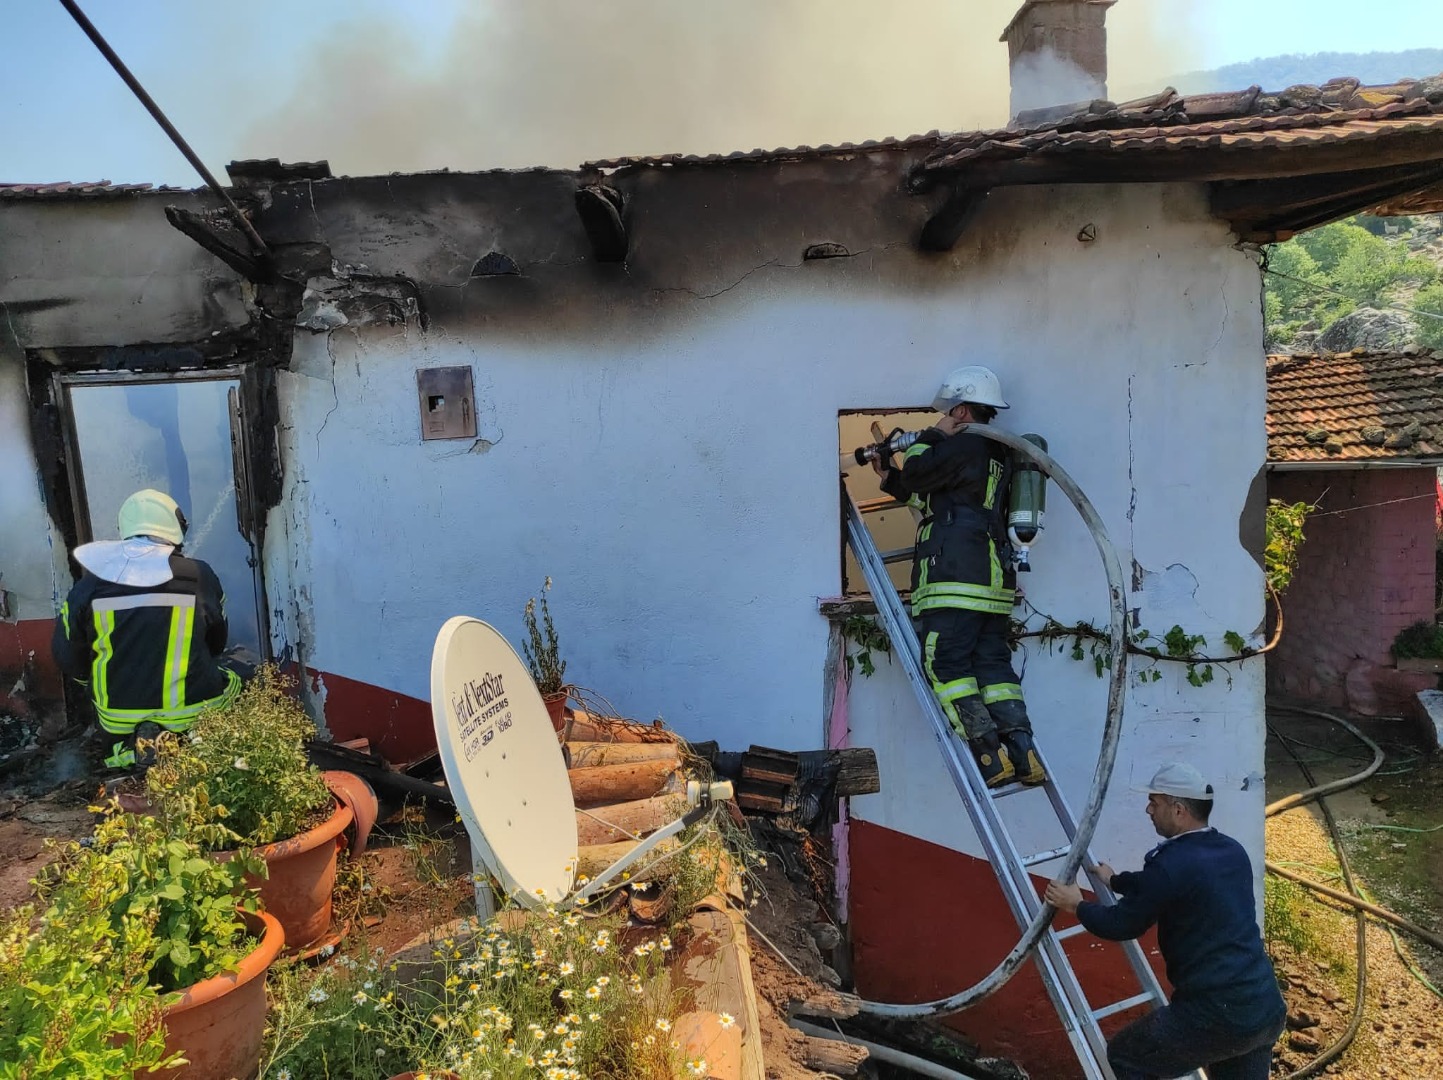 Elektrik kontağından çıkan yangın, 2 katlı evi küle çevirdi